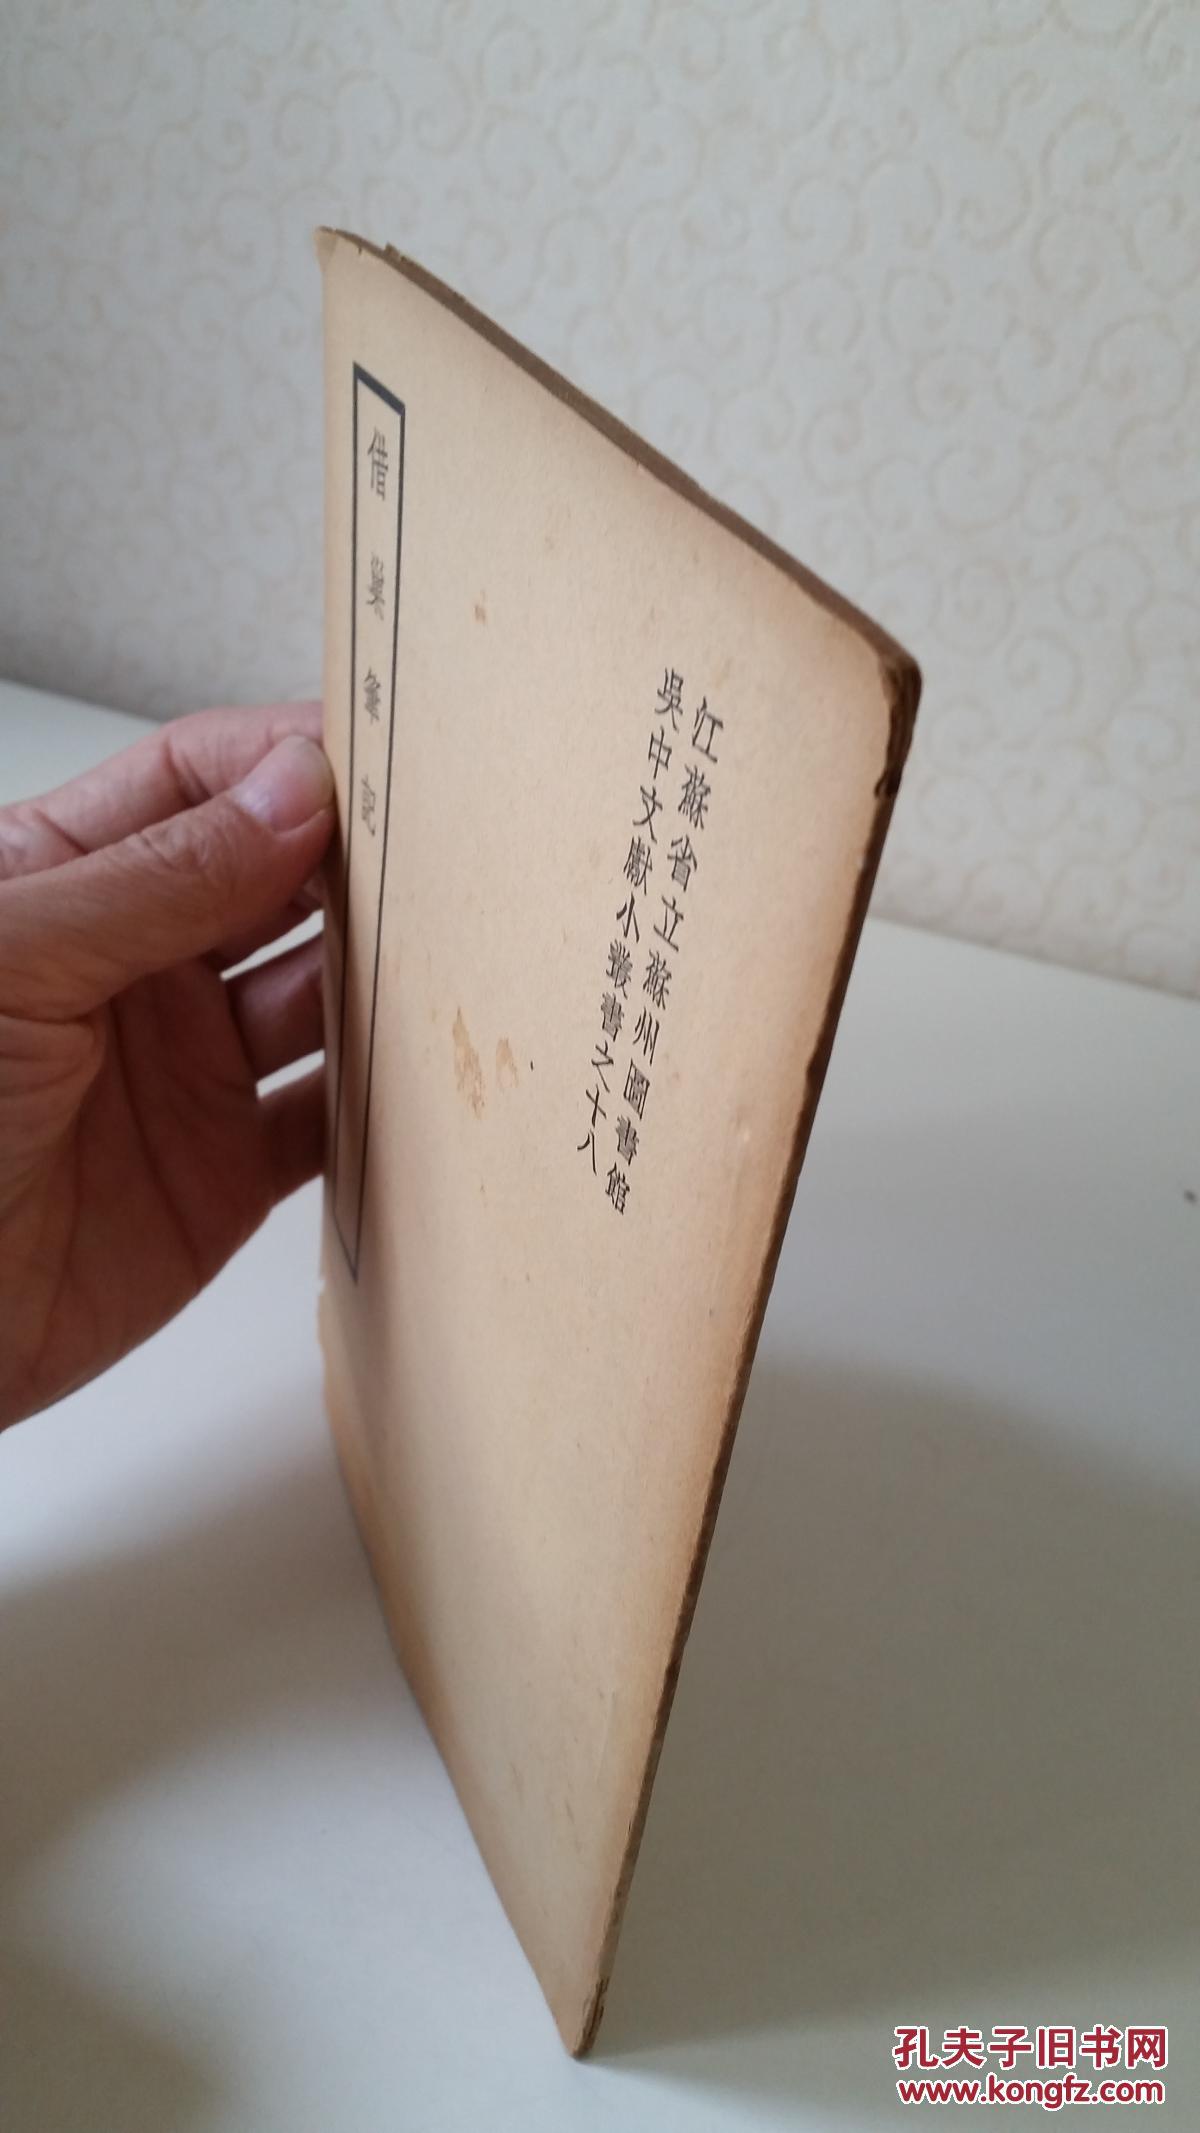 【图】吴中文献小丛书 借巢笔记一卷 民国二十